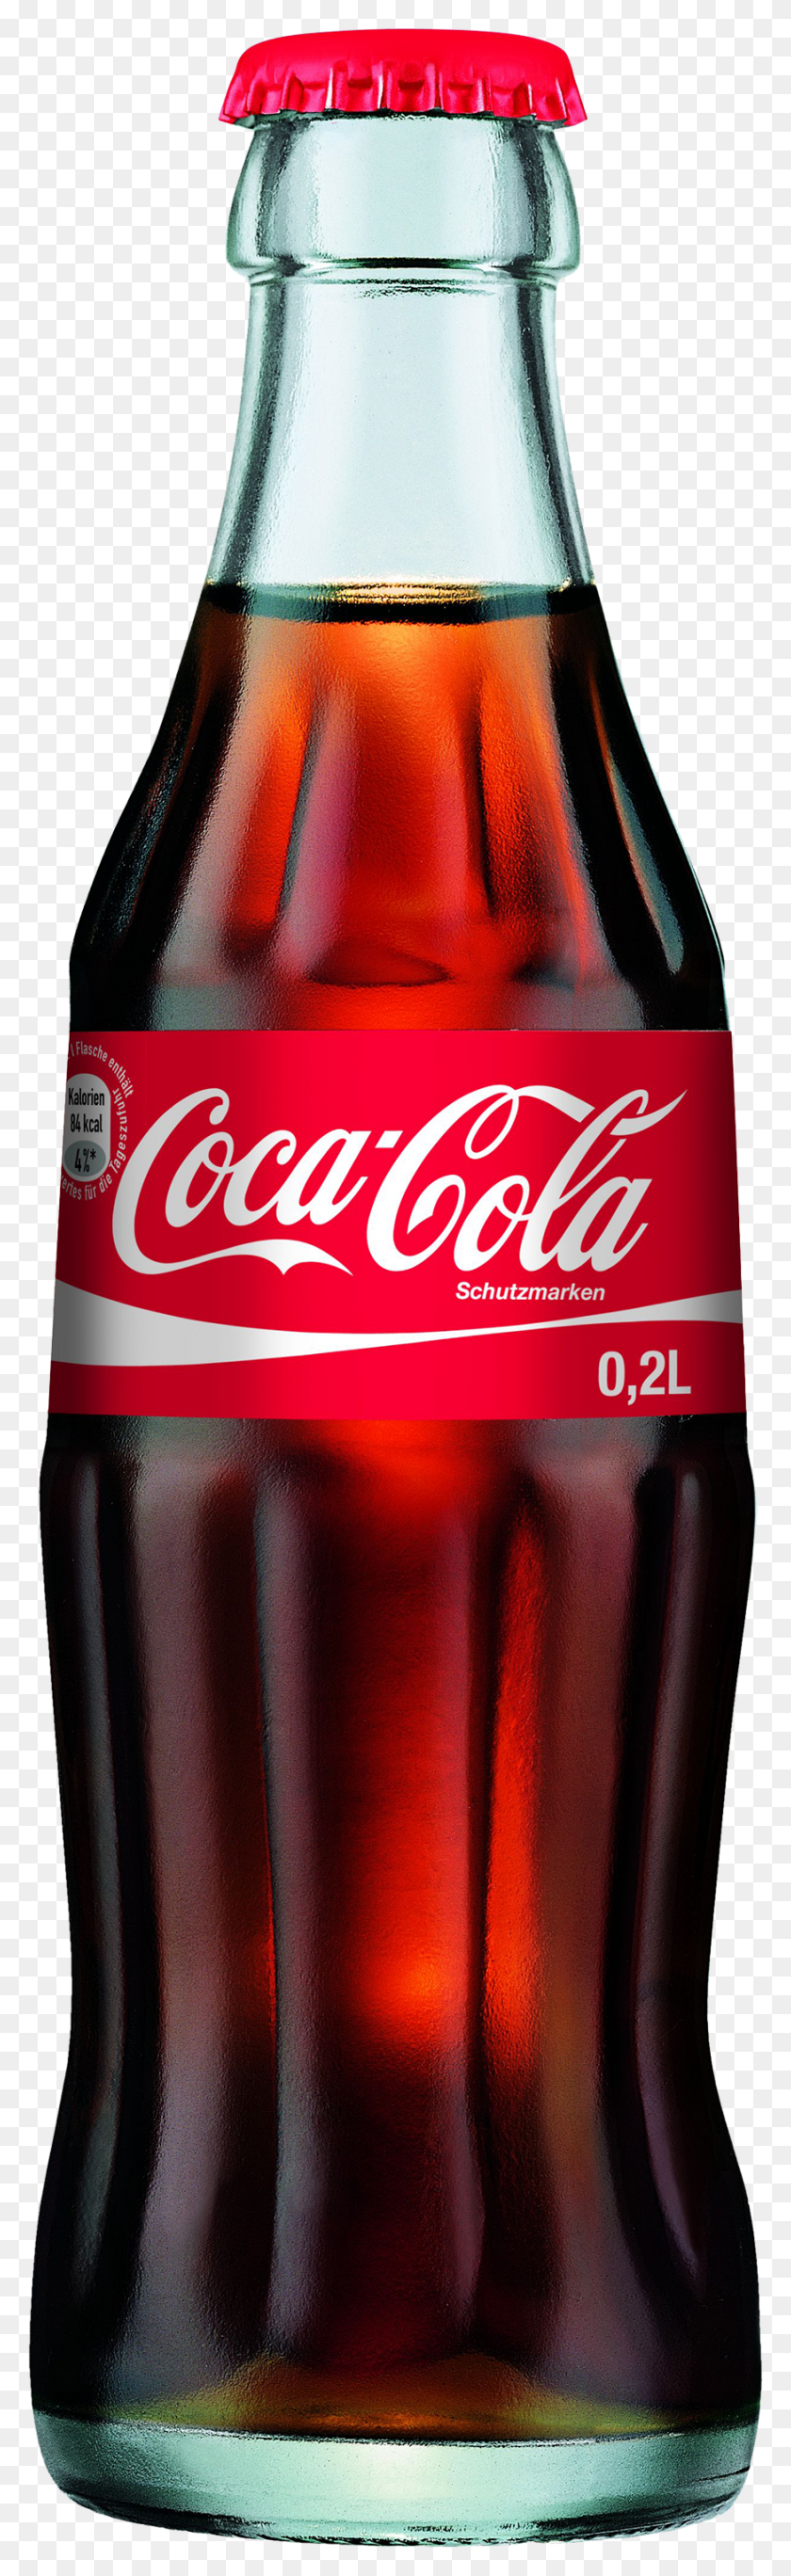 874x3000 Descargar Pngcoque, Botella De Coca Cola Refrigerada De 2 Litros, Bebidas, Coca, Bebida Hd Png